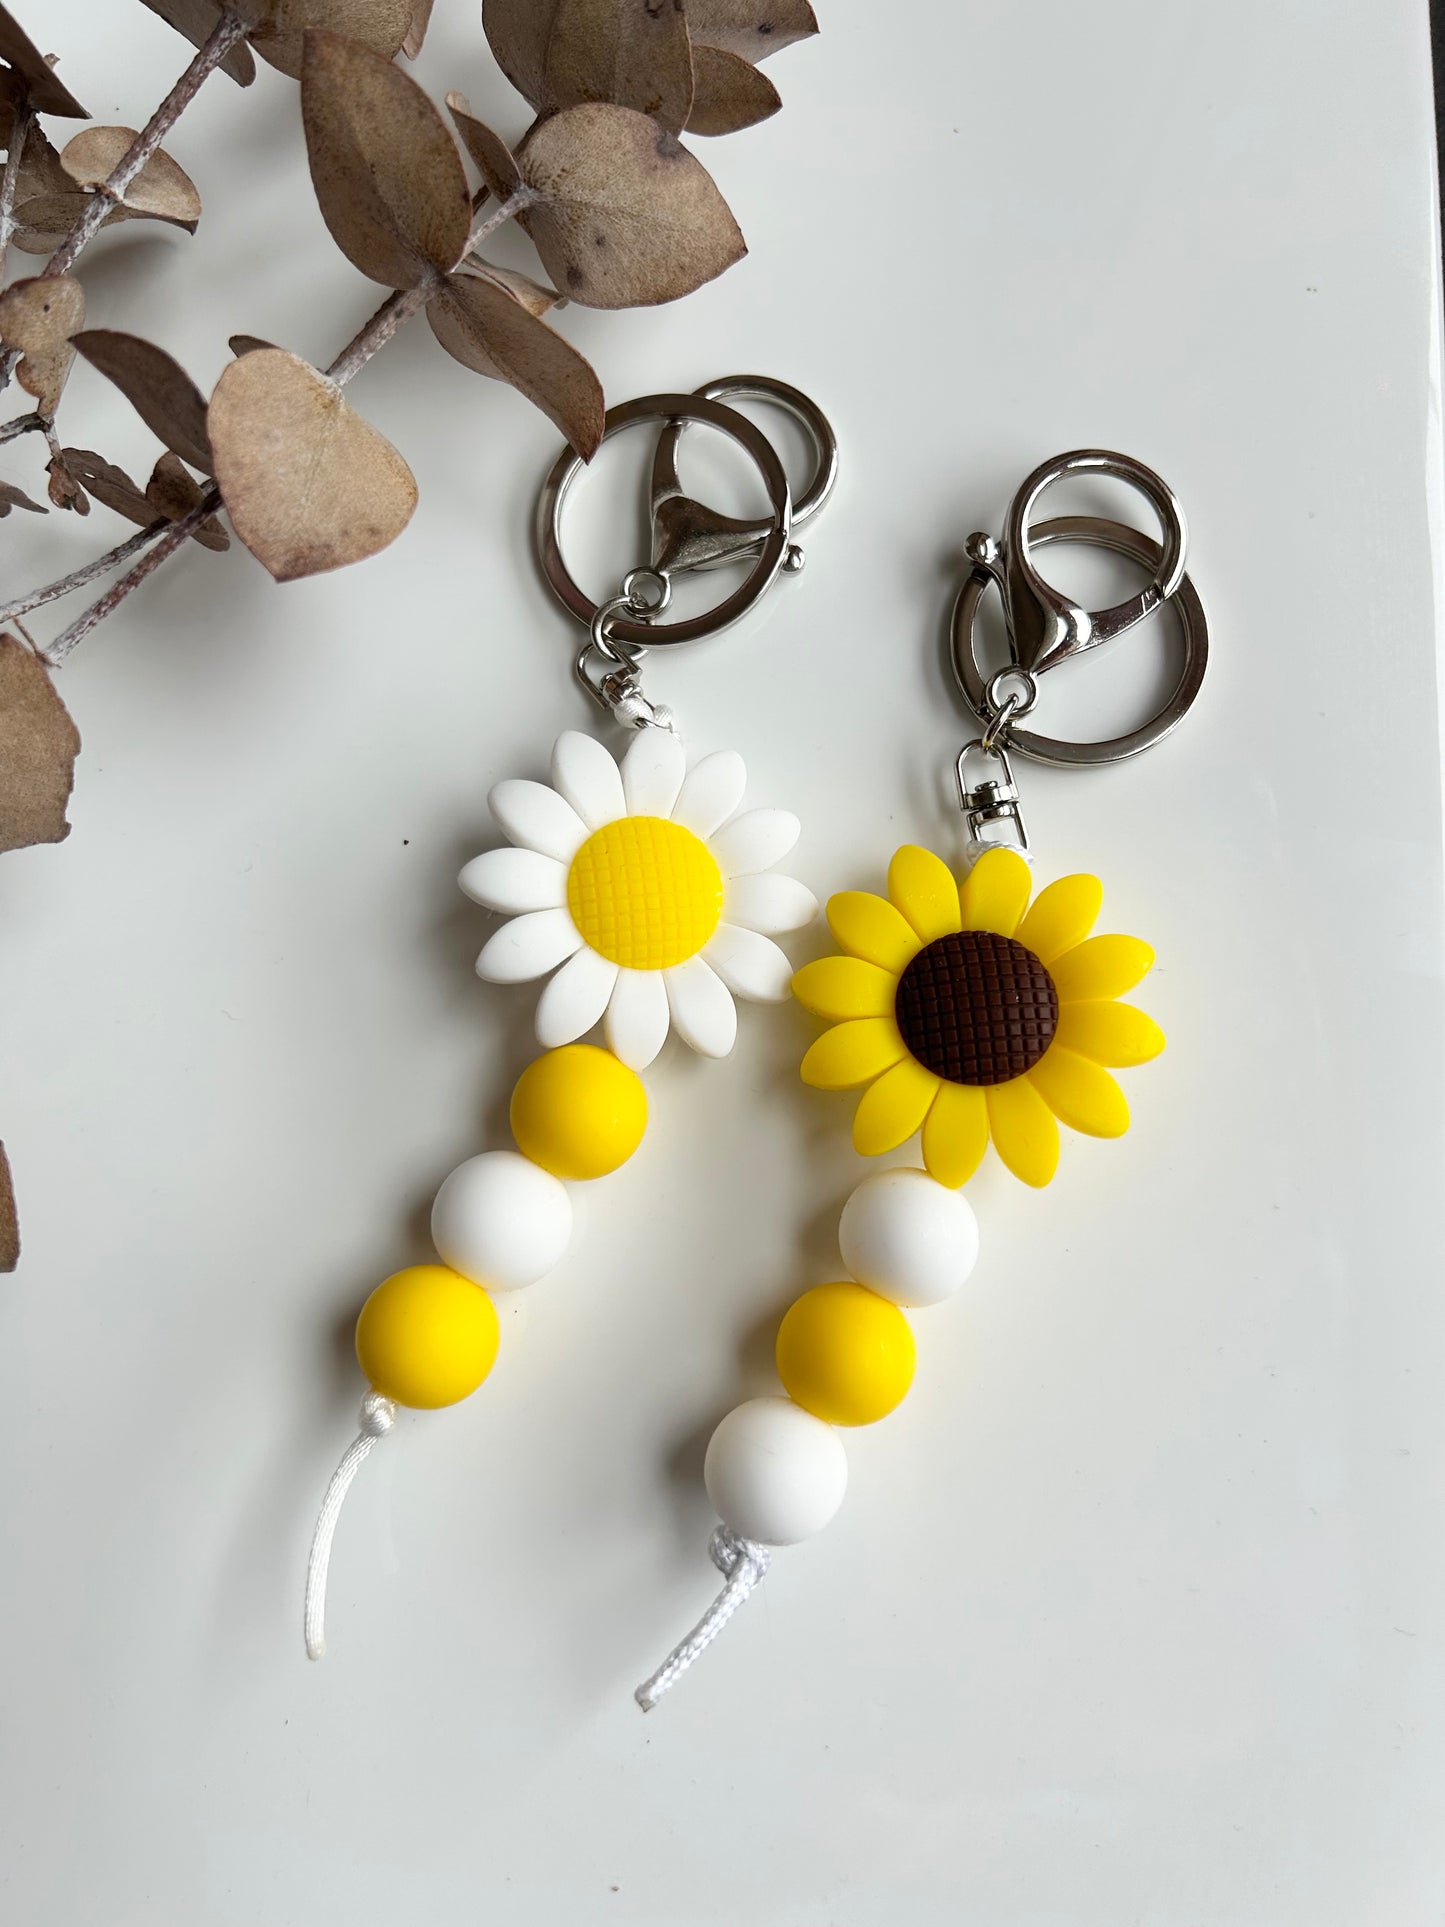 Sunflower Keychains